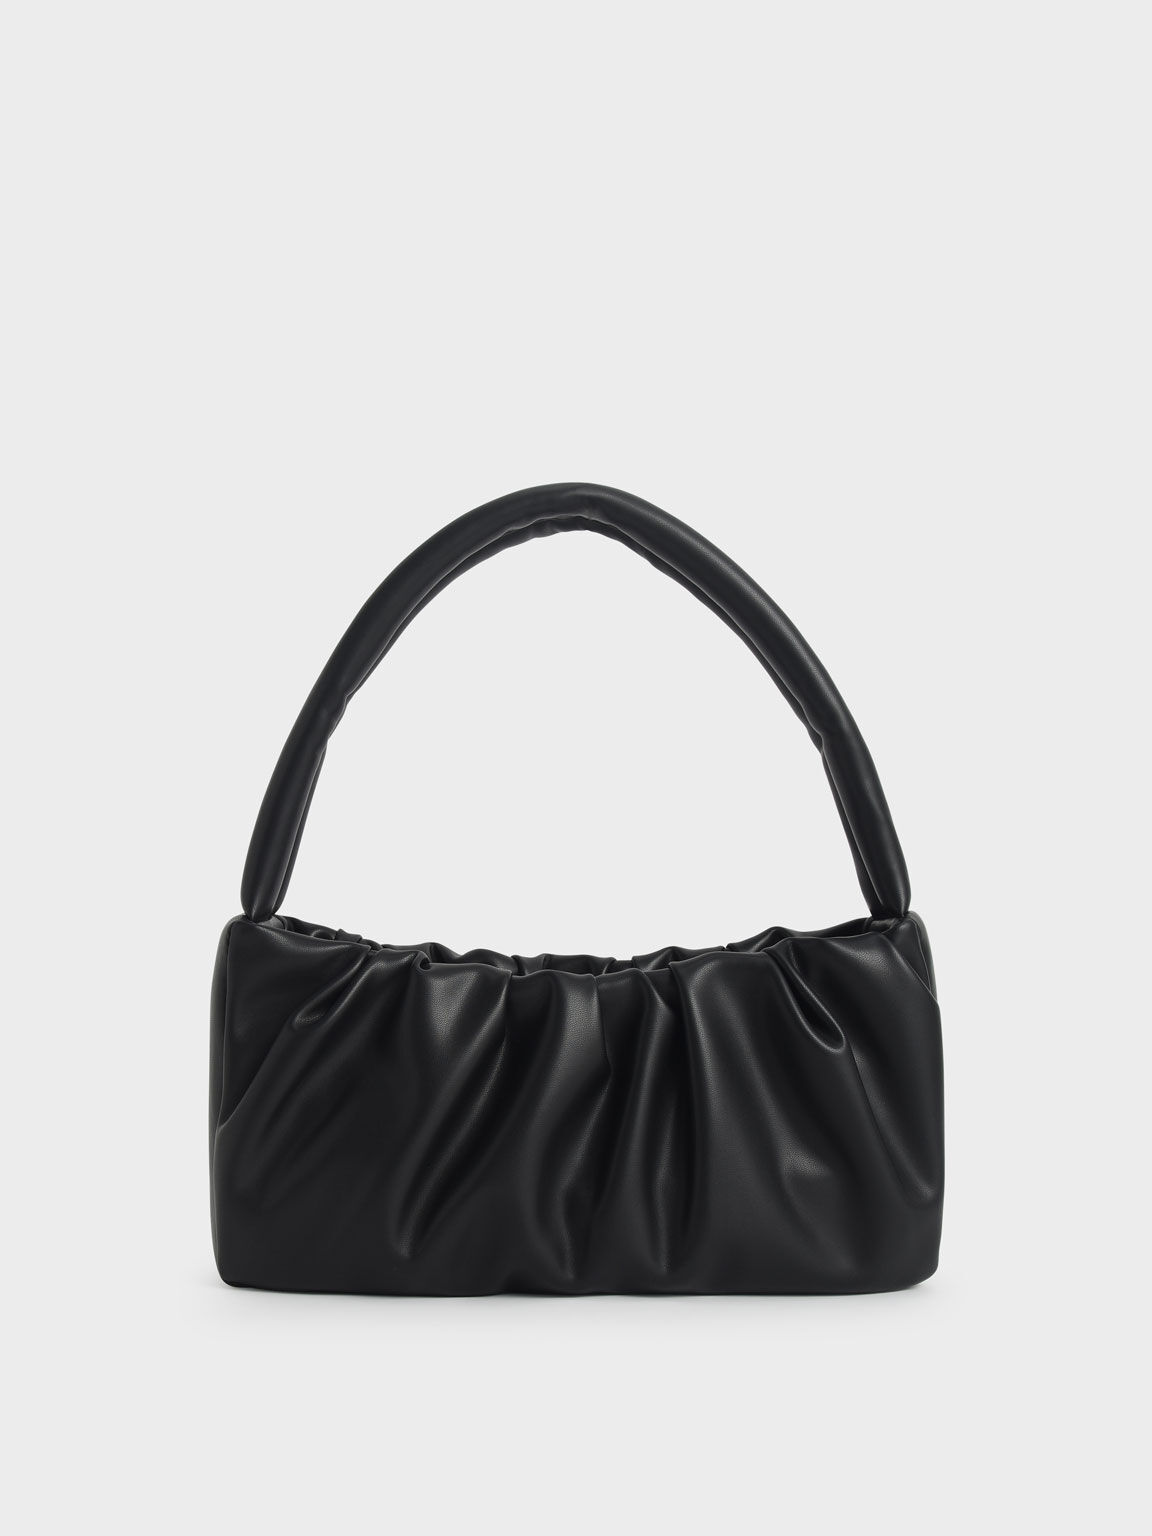 Ruched Top Handle Bag, Black, hi-res